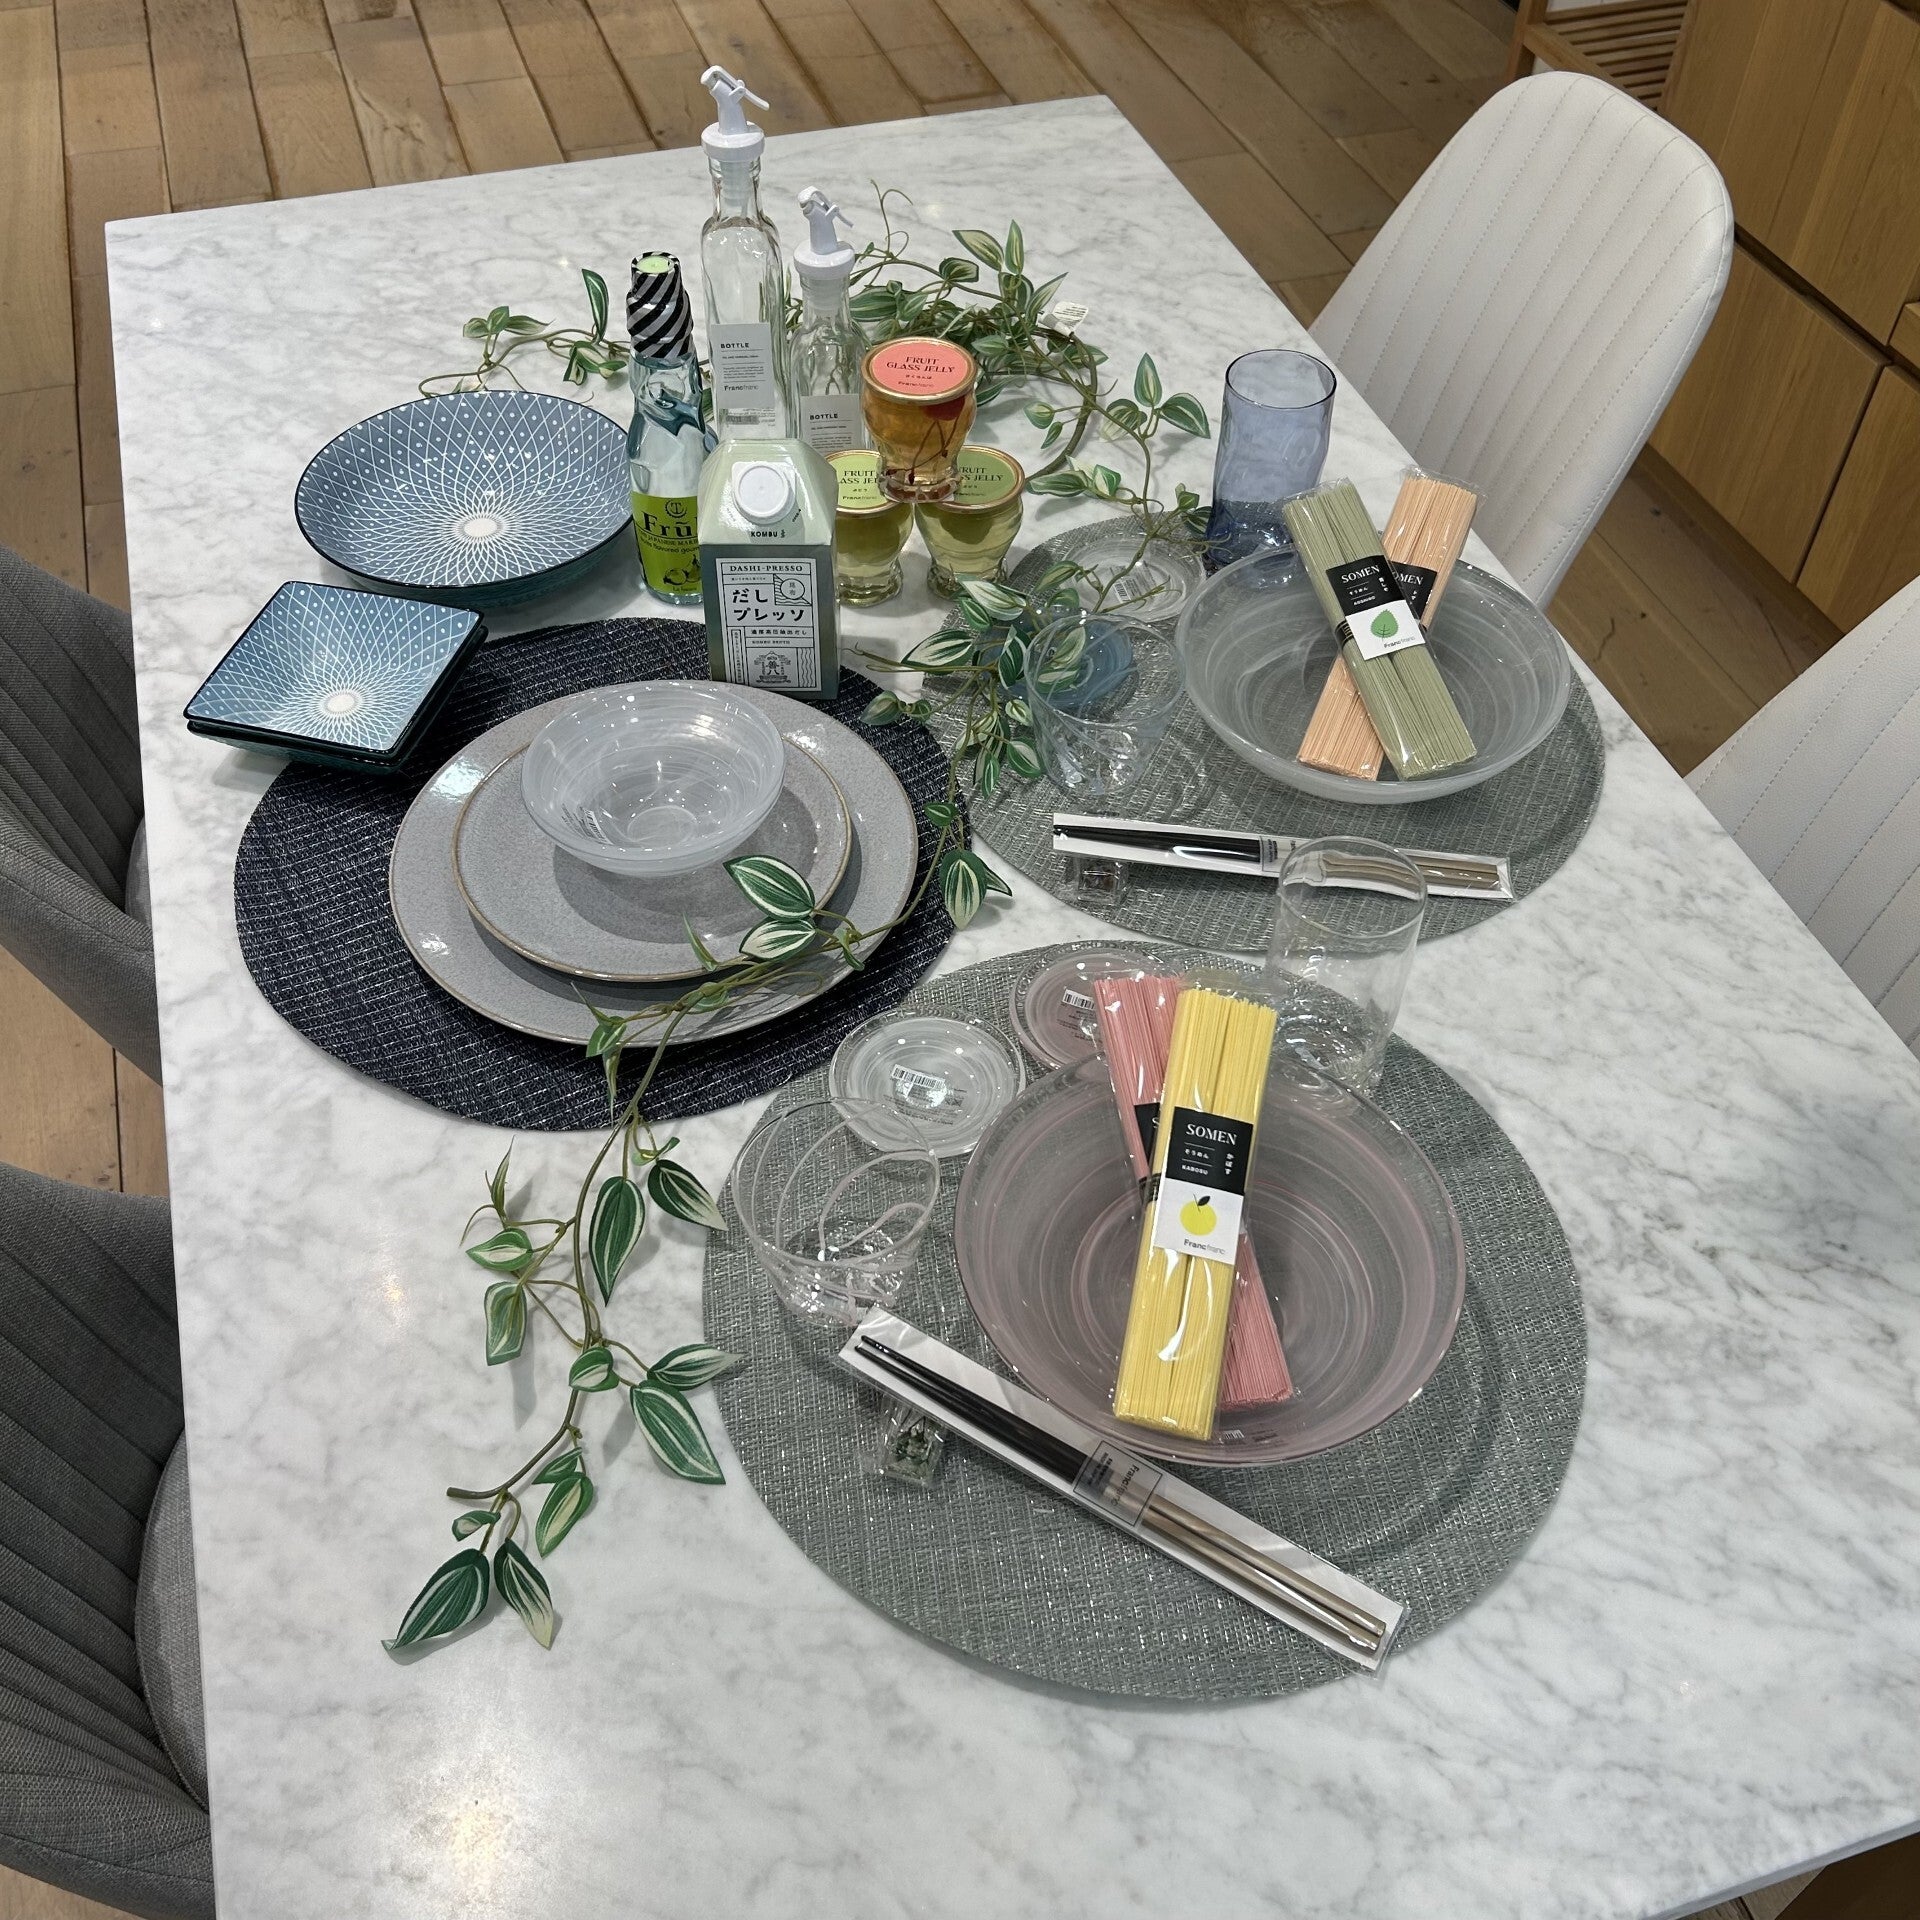 彩り豊かな夏食器で楽しむテーブルコーディネート | Francfranc（フランフラン）公式通販 家具・インテリア・生活雑貨